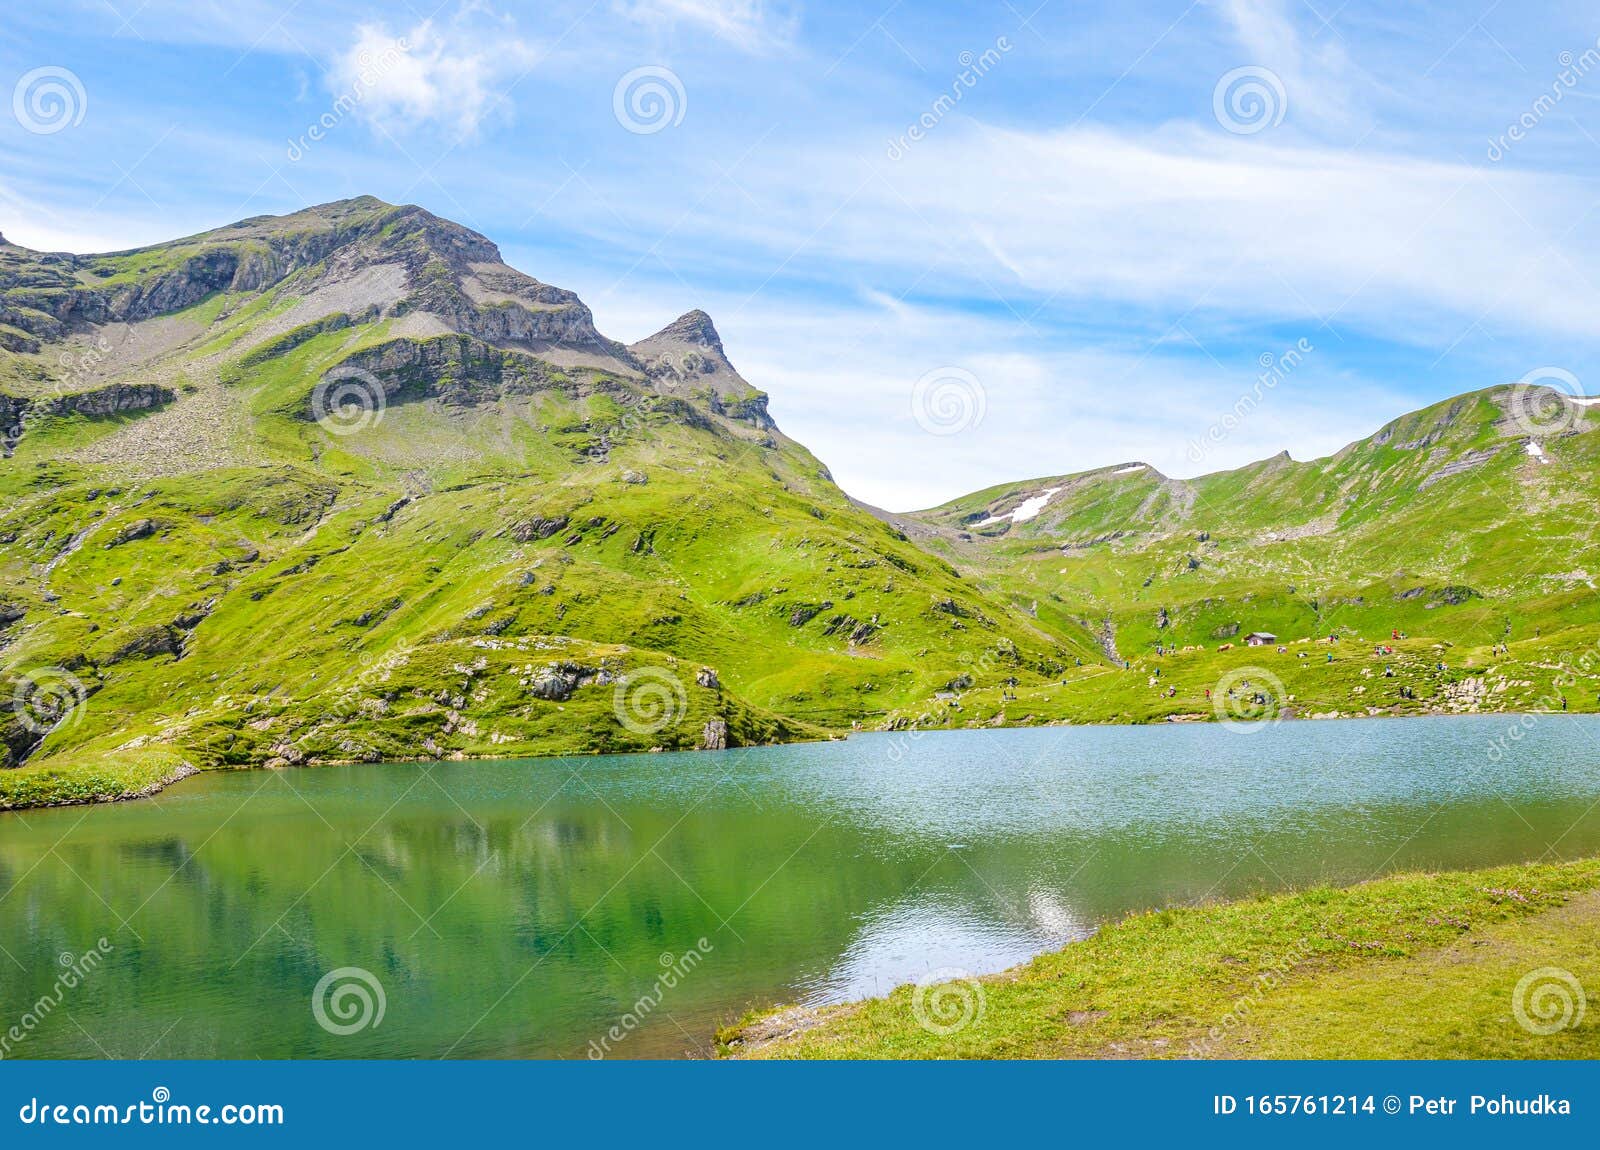 Piękne jezioro Bachalpsee w Alpach Szwajcarskich w sezonie letnim Jezioro alpejskie i krajobraz Popularny cel turystyczny na ścieżce z Grindelwald Zabytki Szwajcarii